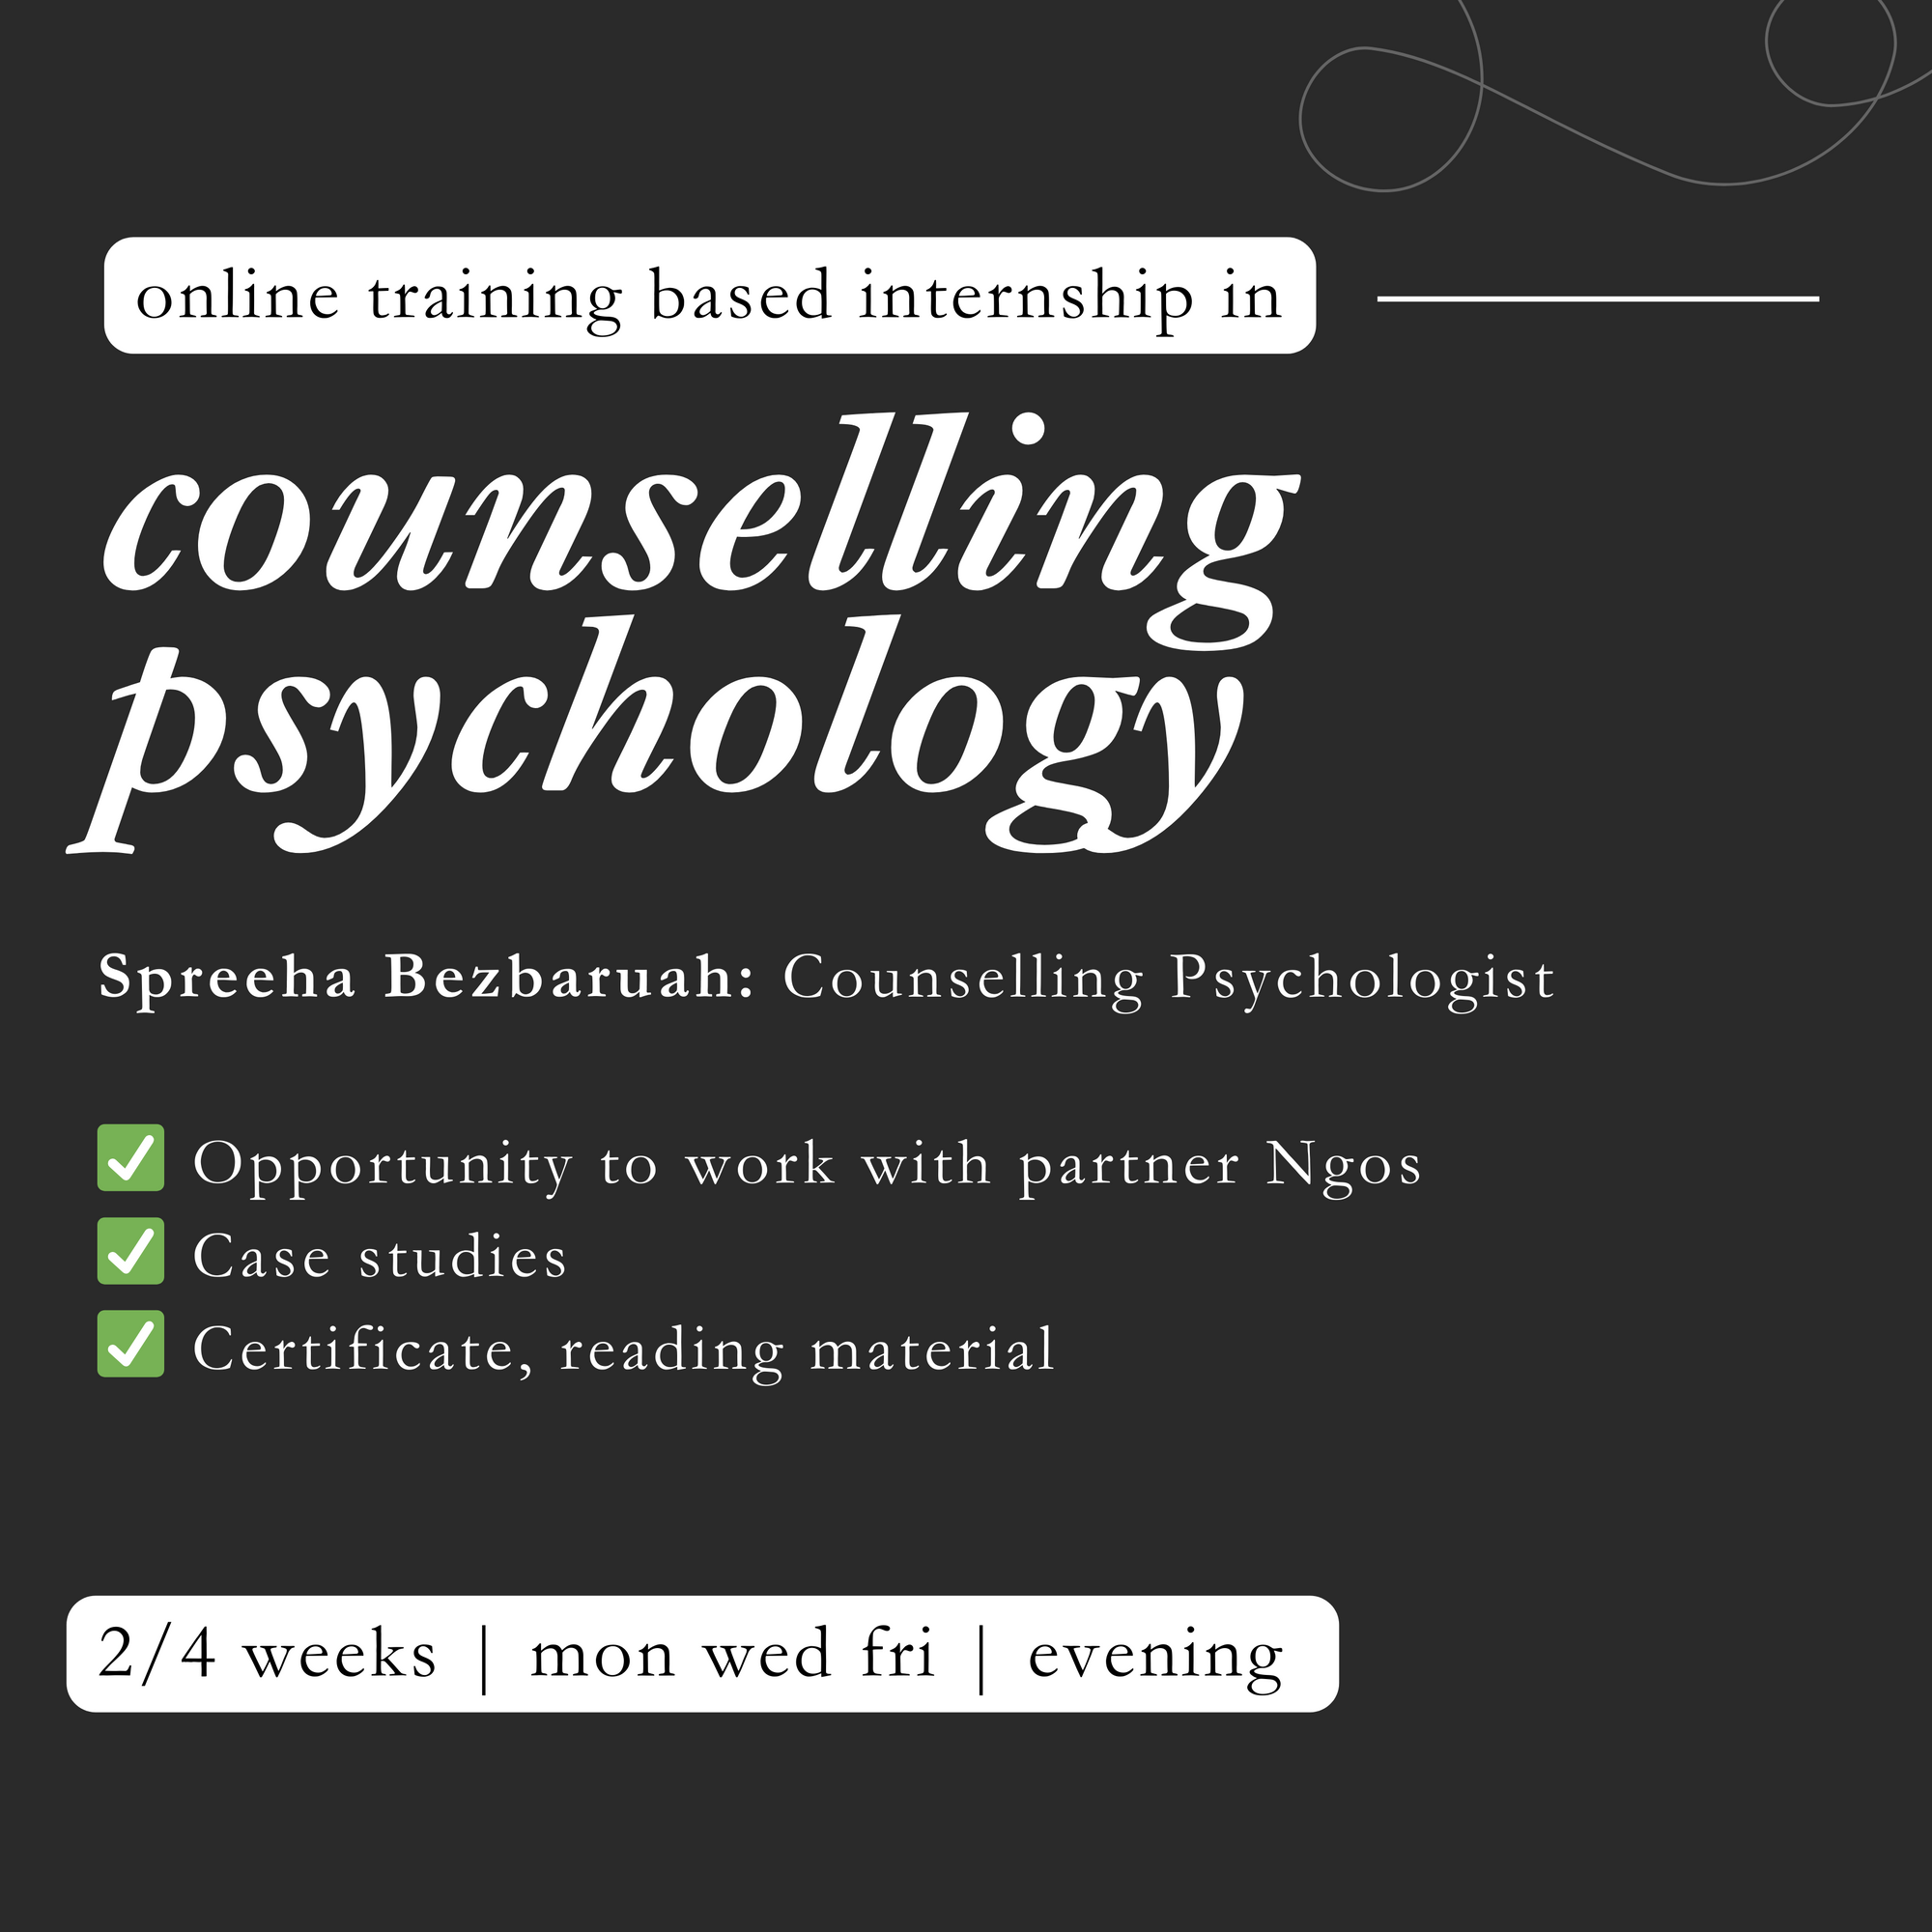 Counselling Psychology Training Based Internship